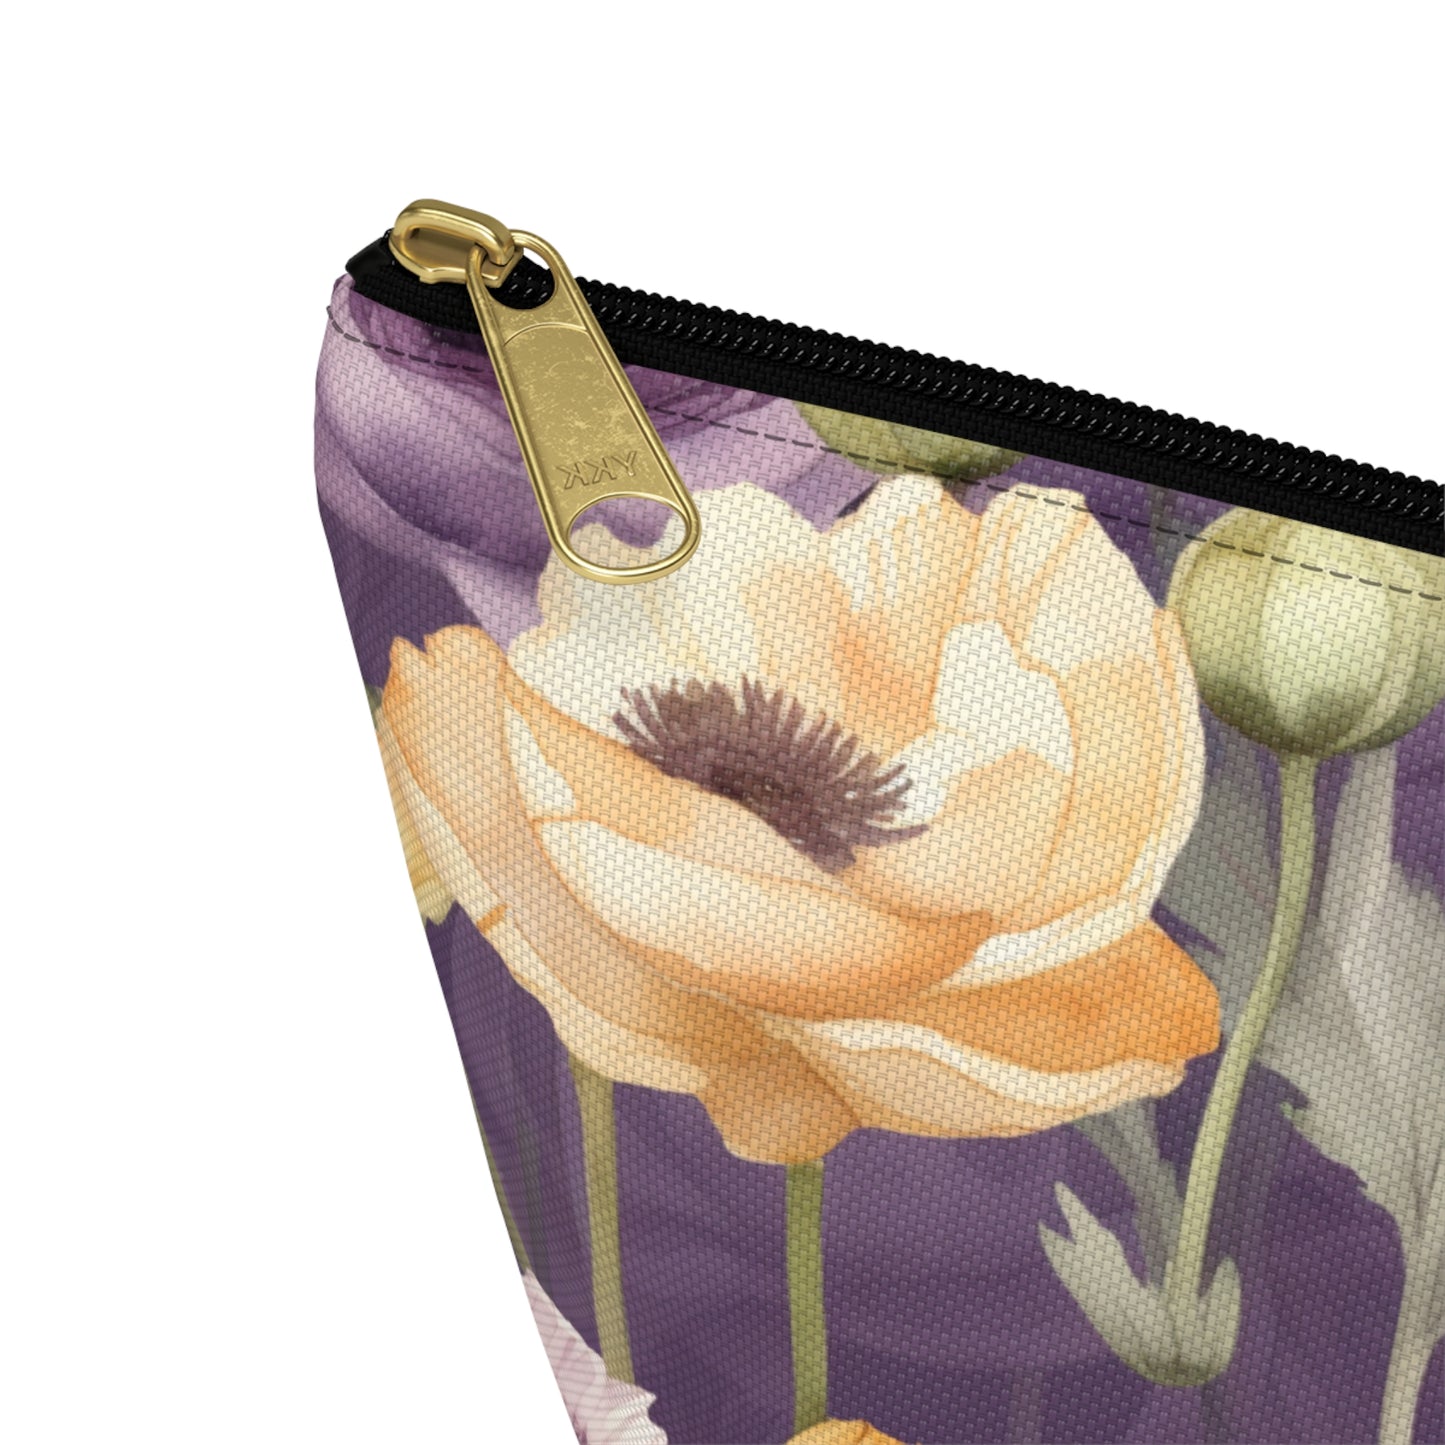 Floral Makeup Bag / Purple Cosmetic Bag